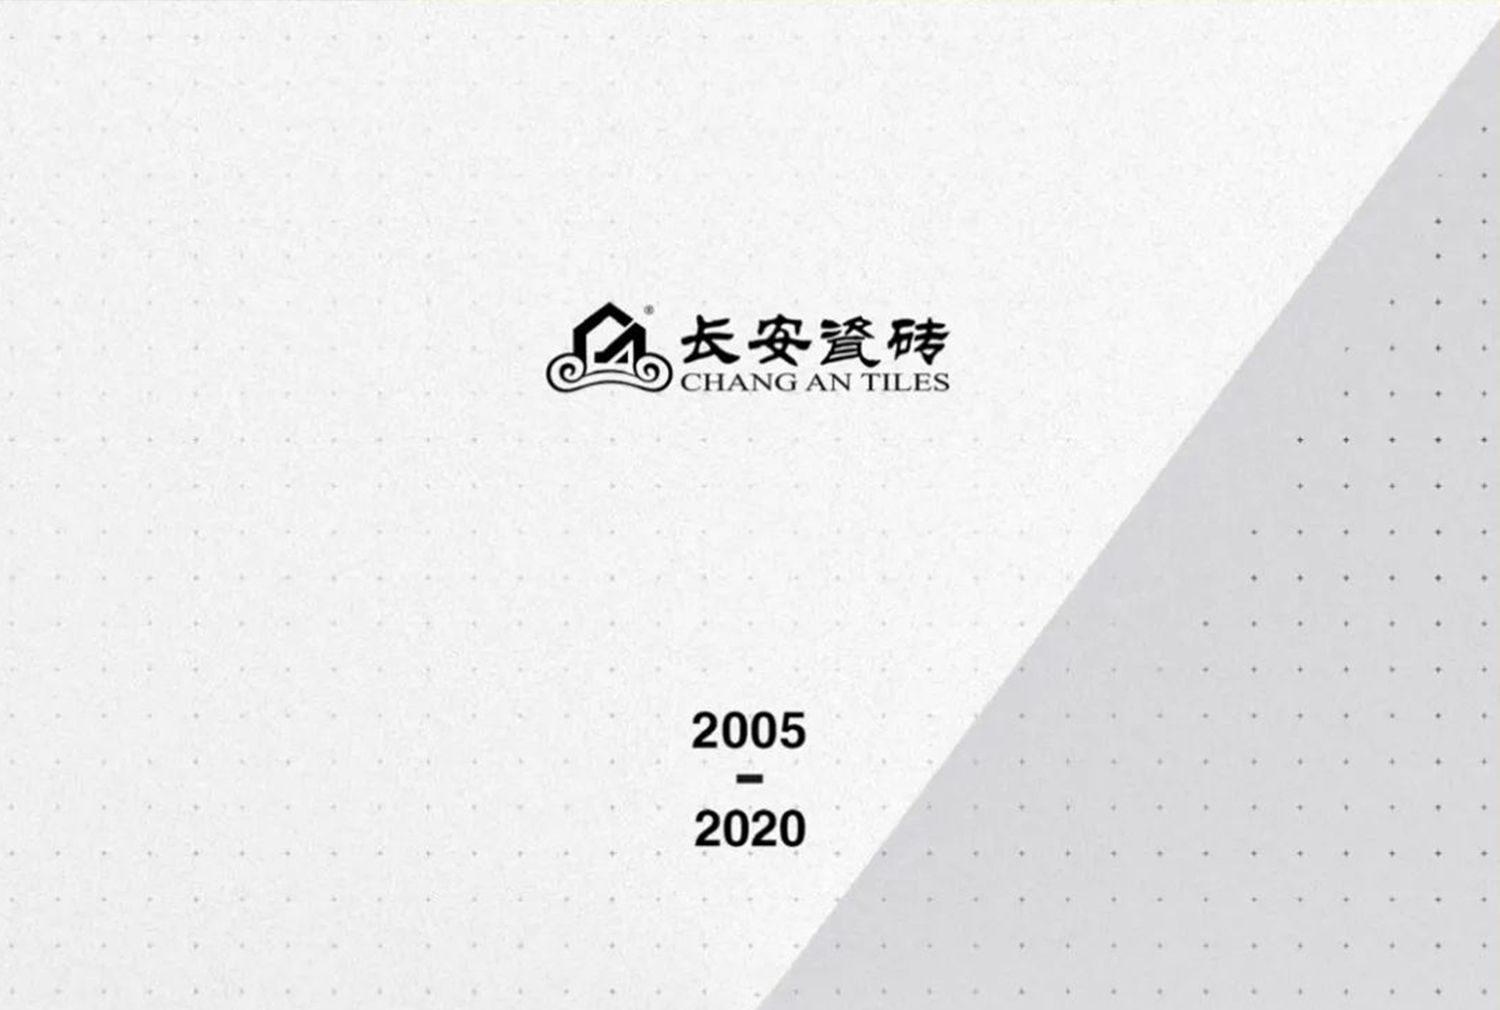 馭夢前行——2020年長安瓷磚邀您共啟財富大門